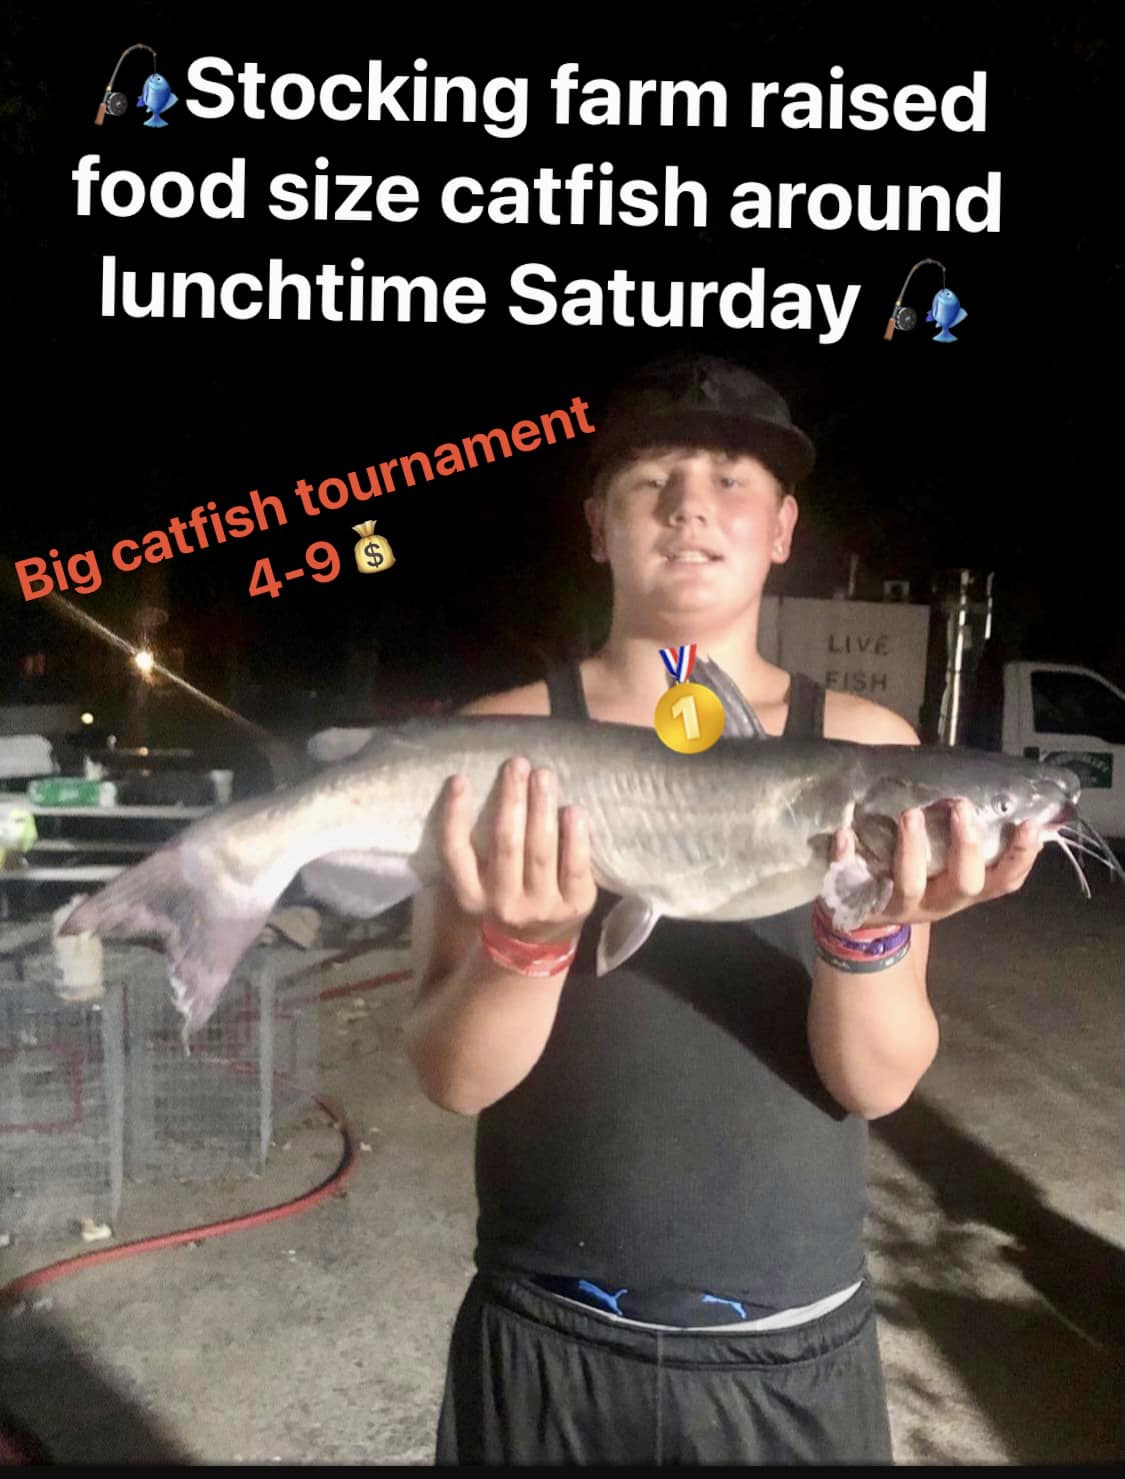 Big catfish tournament